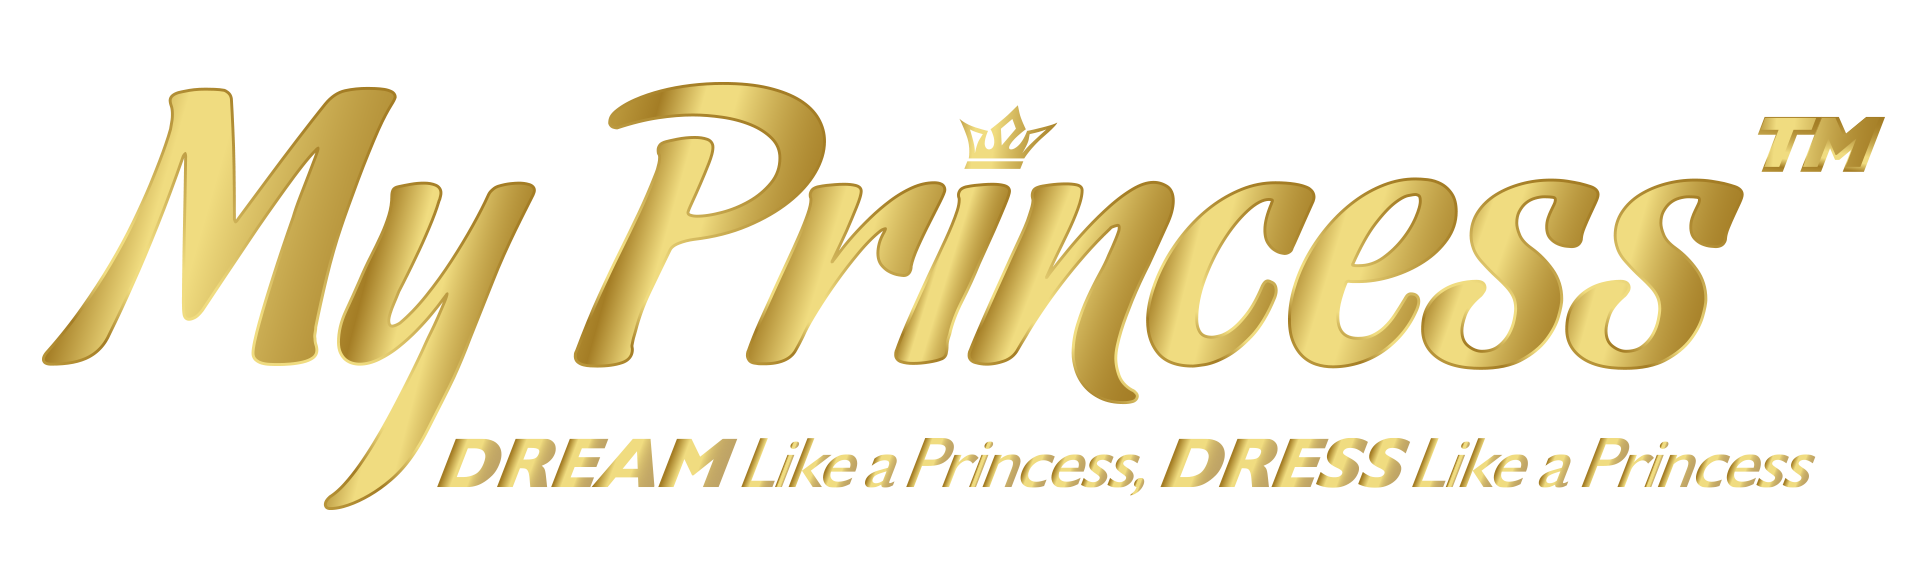 My princess company logo